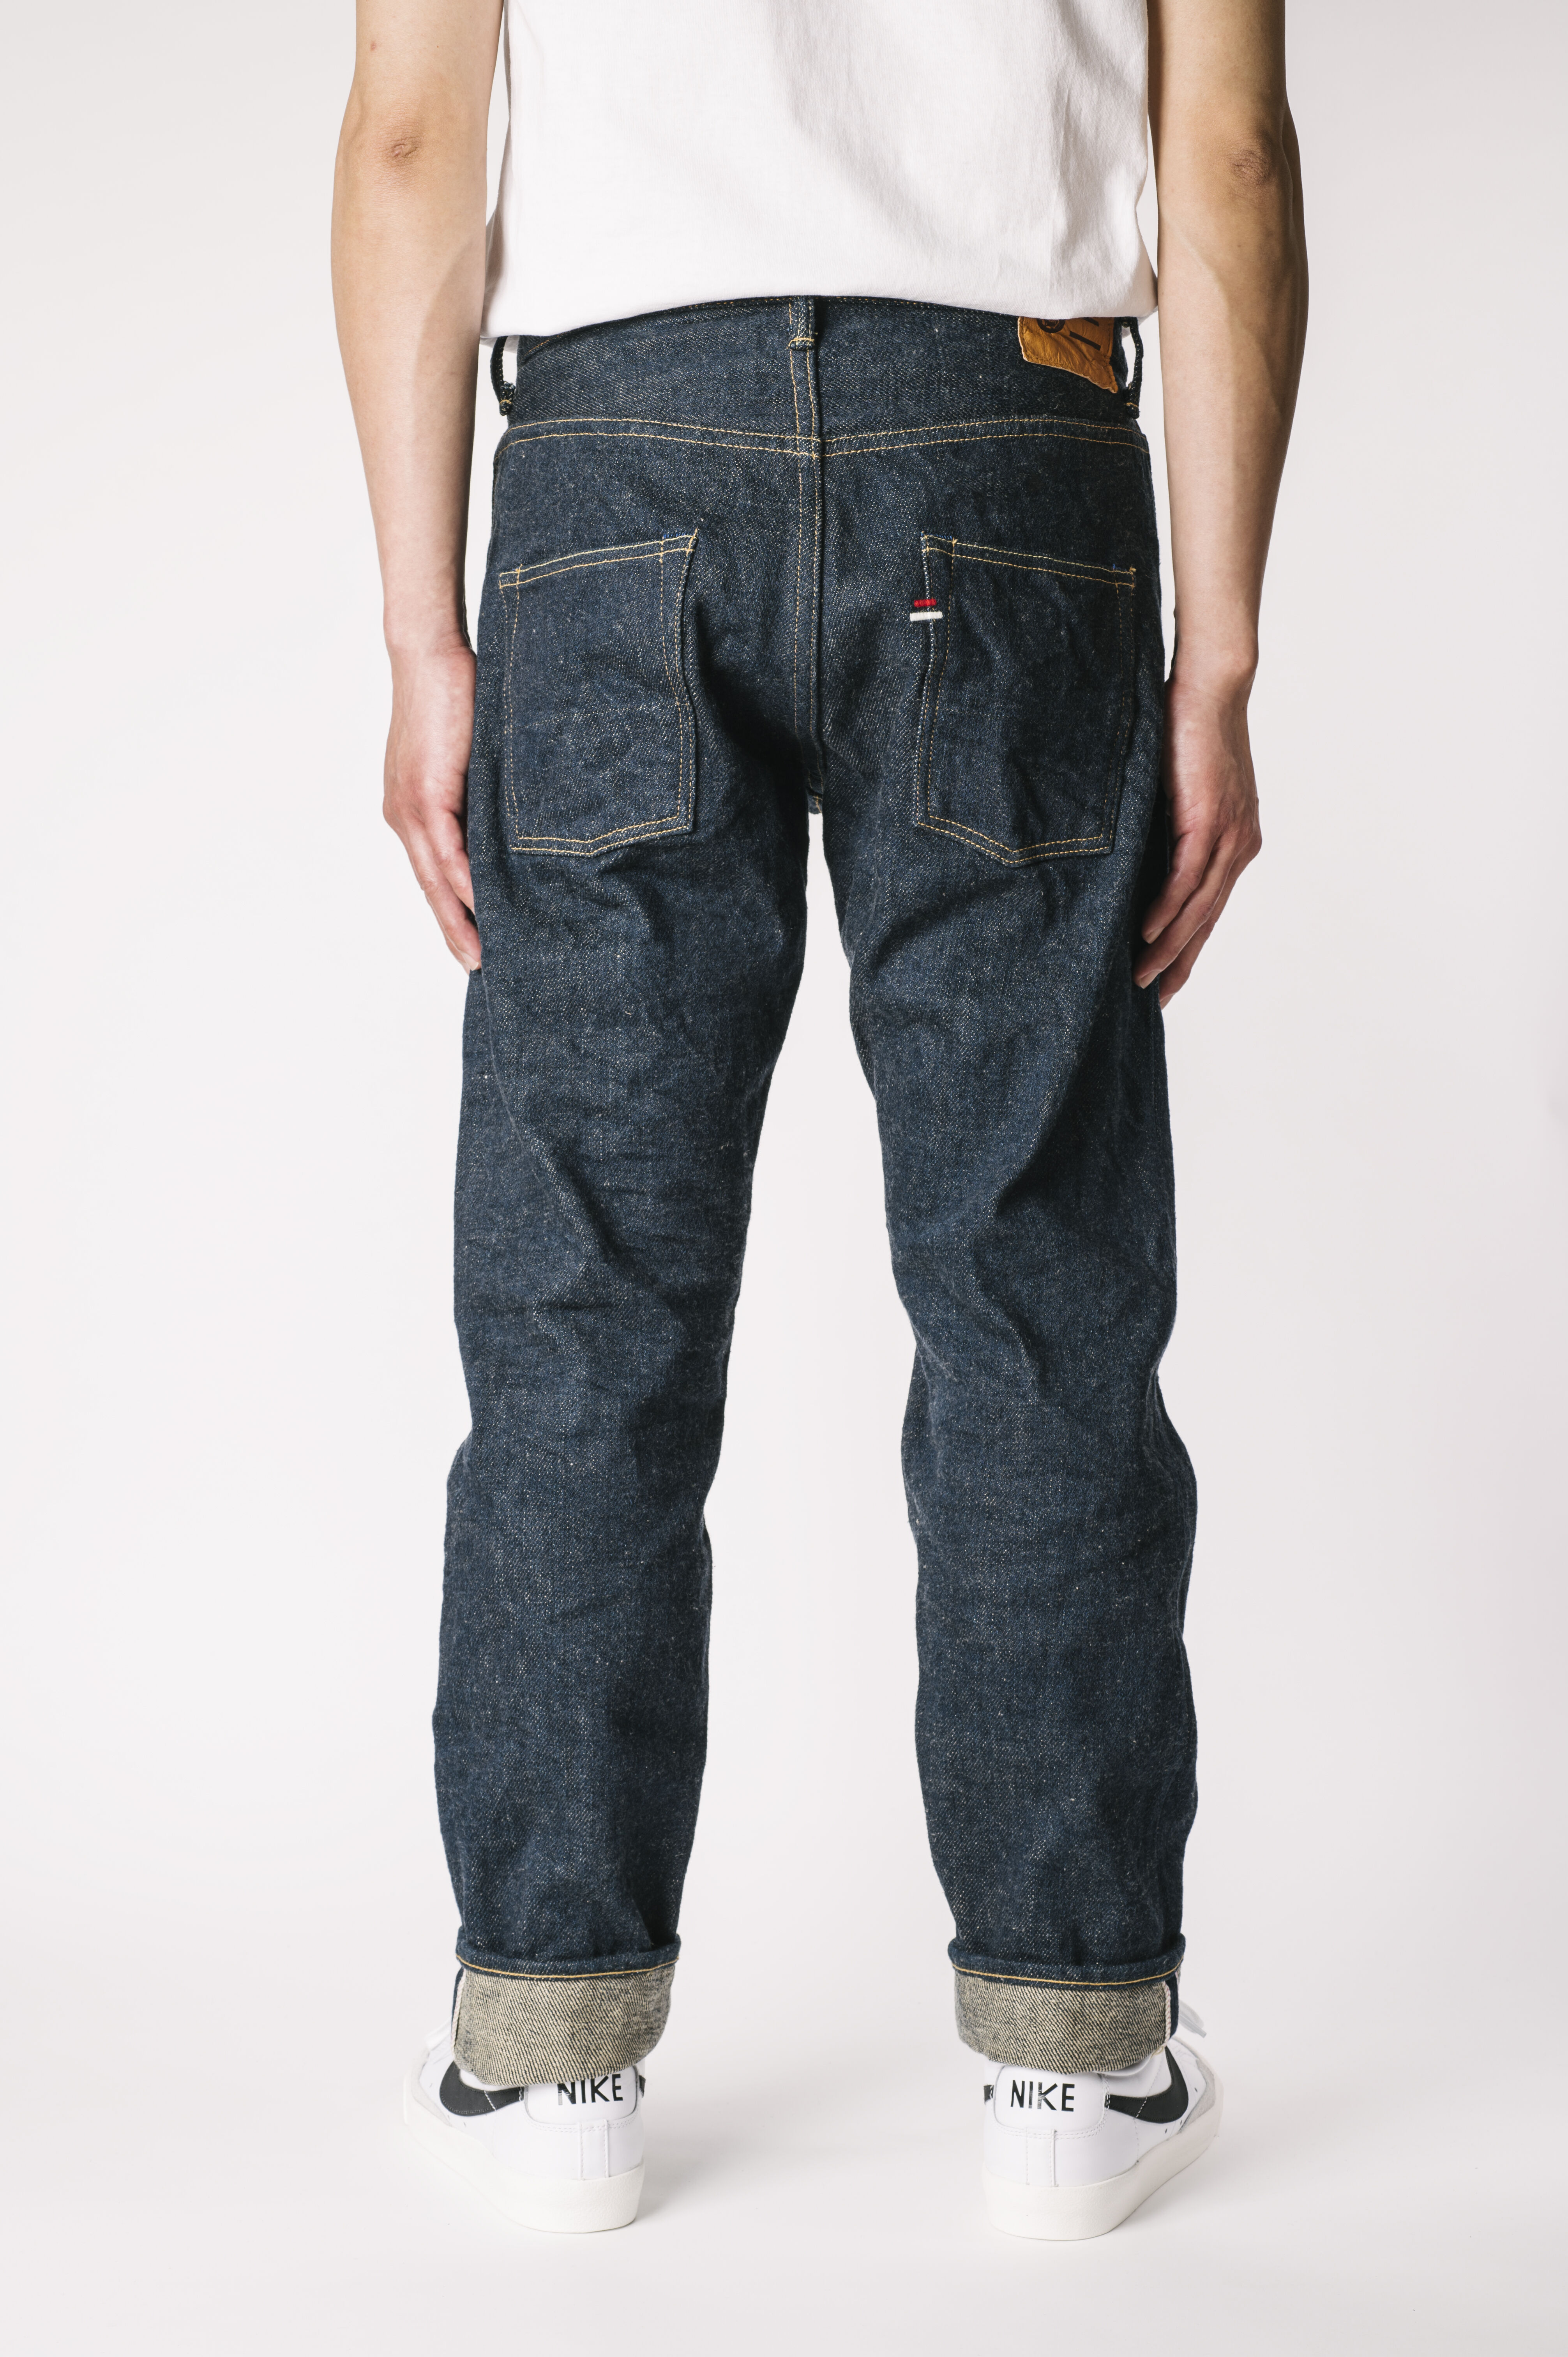 OTHT ONI x TANUKI Collaboration 21.5oz Secret Denim High Rise Tapered Jeans